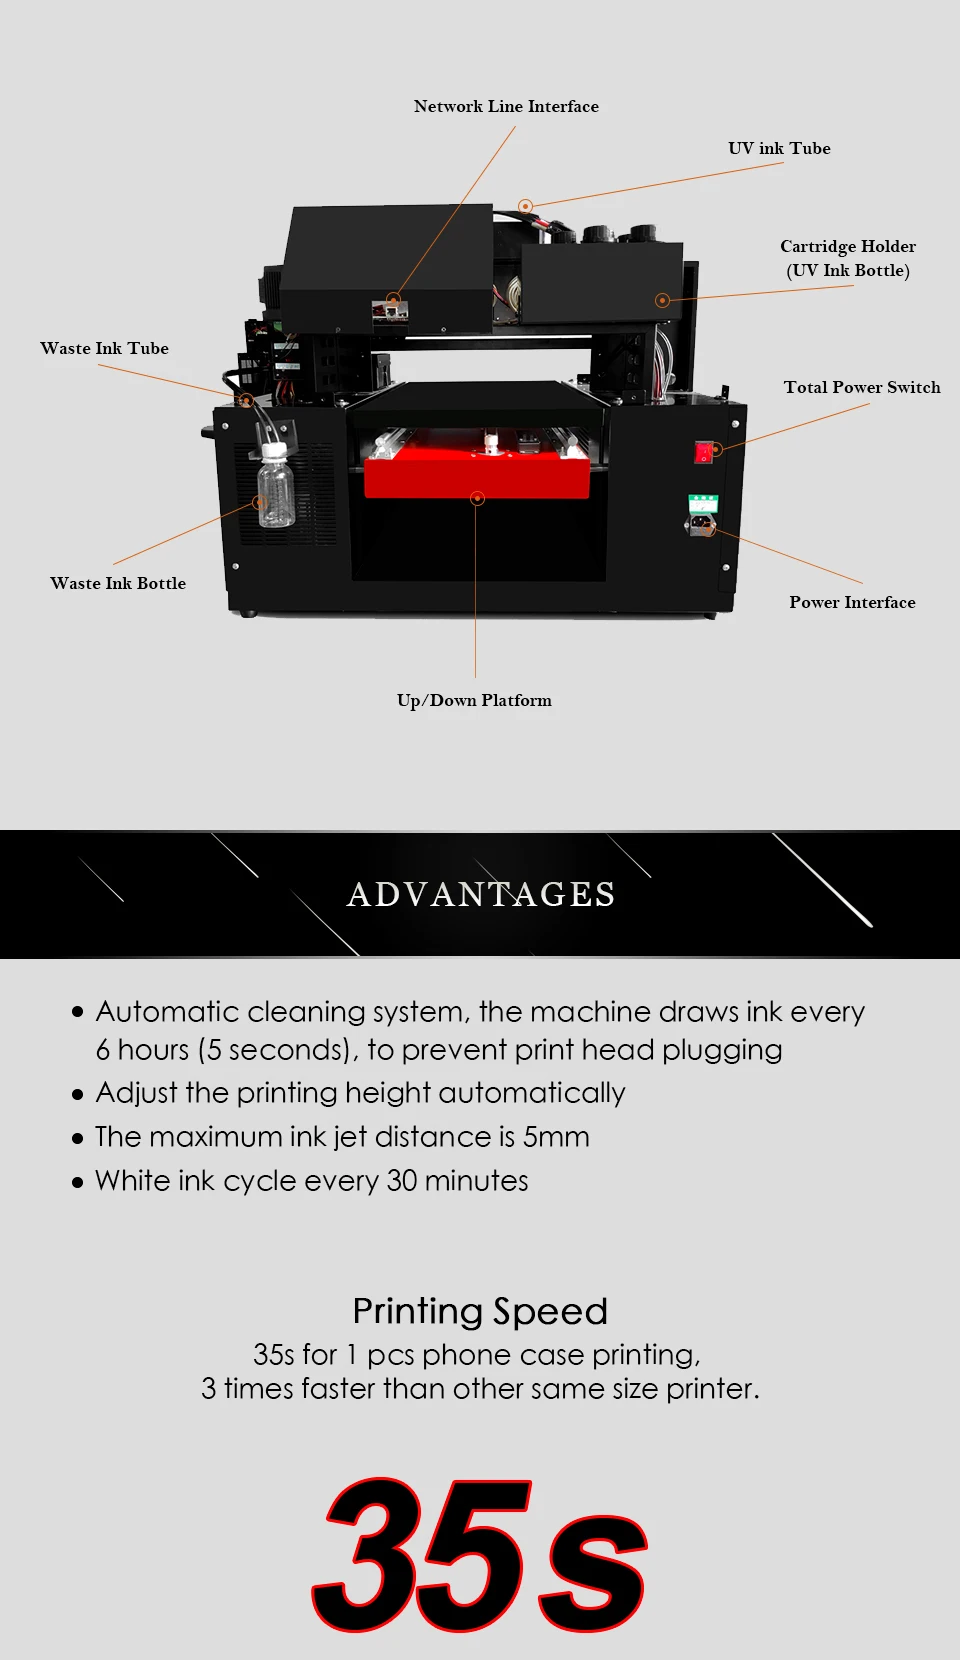 Jetvinner автоматический A3 УФ принтер струйный принтер коммерческий планшетный принтер для бутылок, чехол для телефона, футболки, кожи, дерева